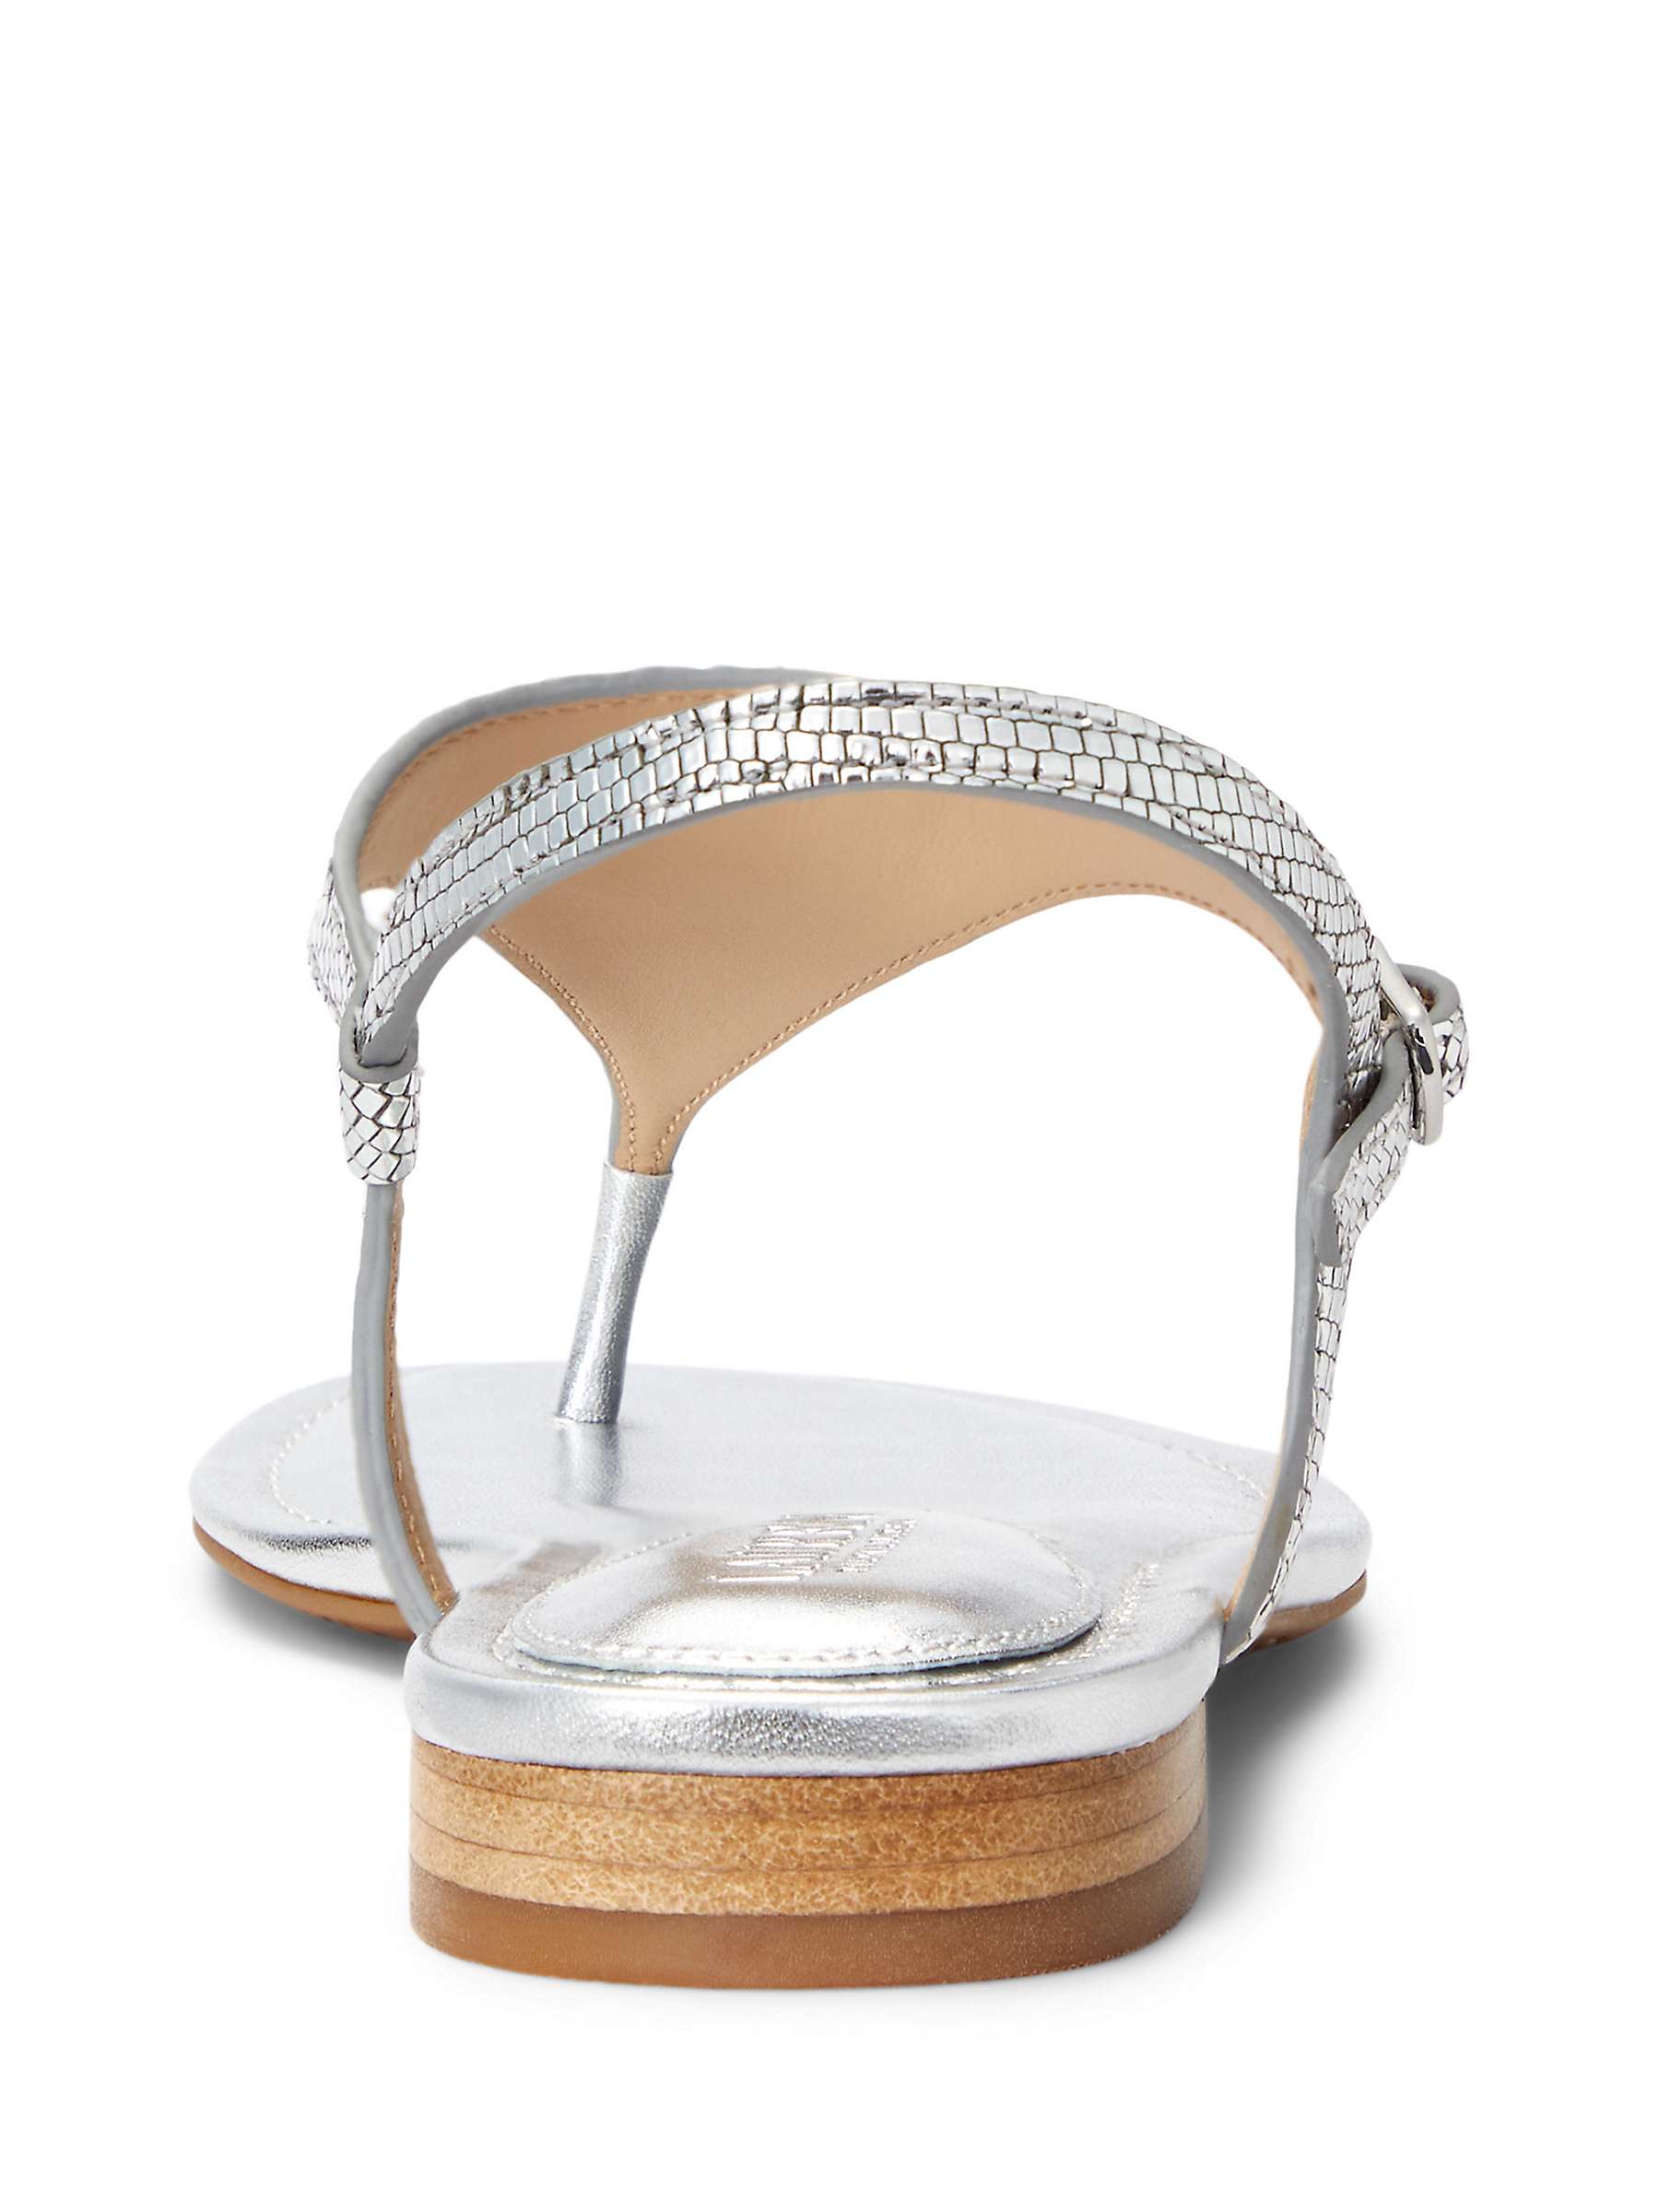 Buy Lauren Ralph Lauren Ellington Textured Leather Sandals, Silver Online at johnlewis.com